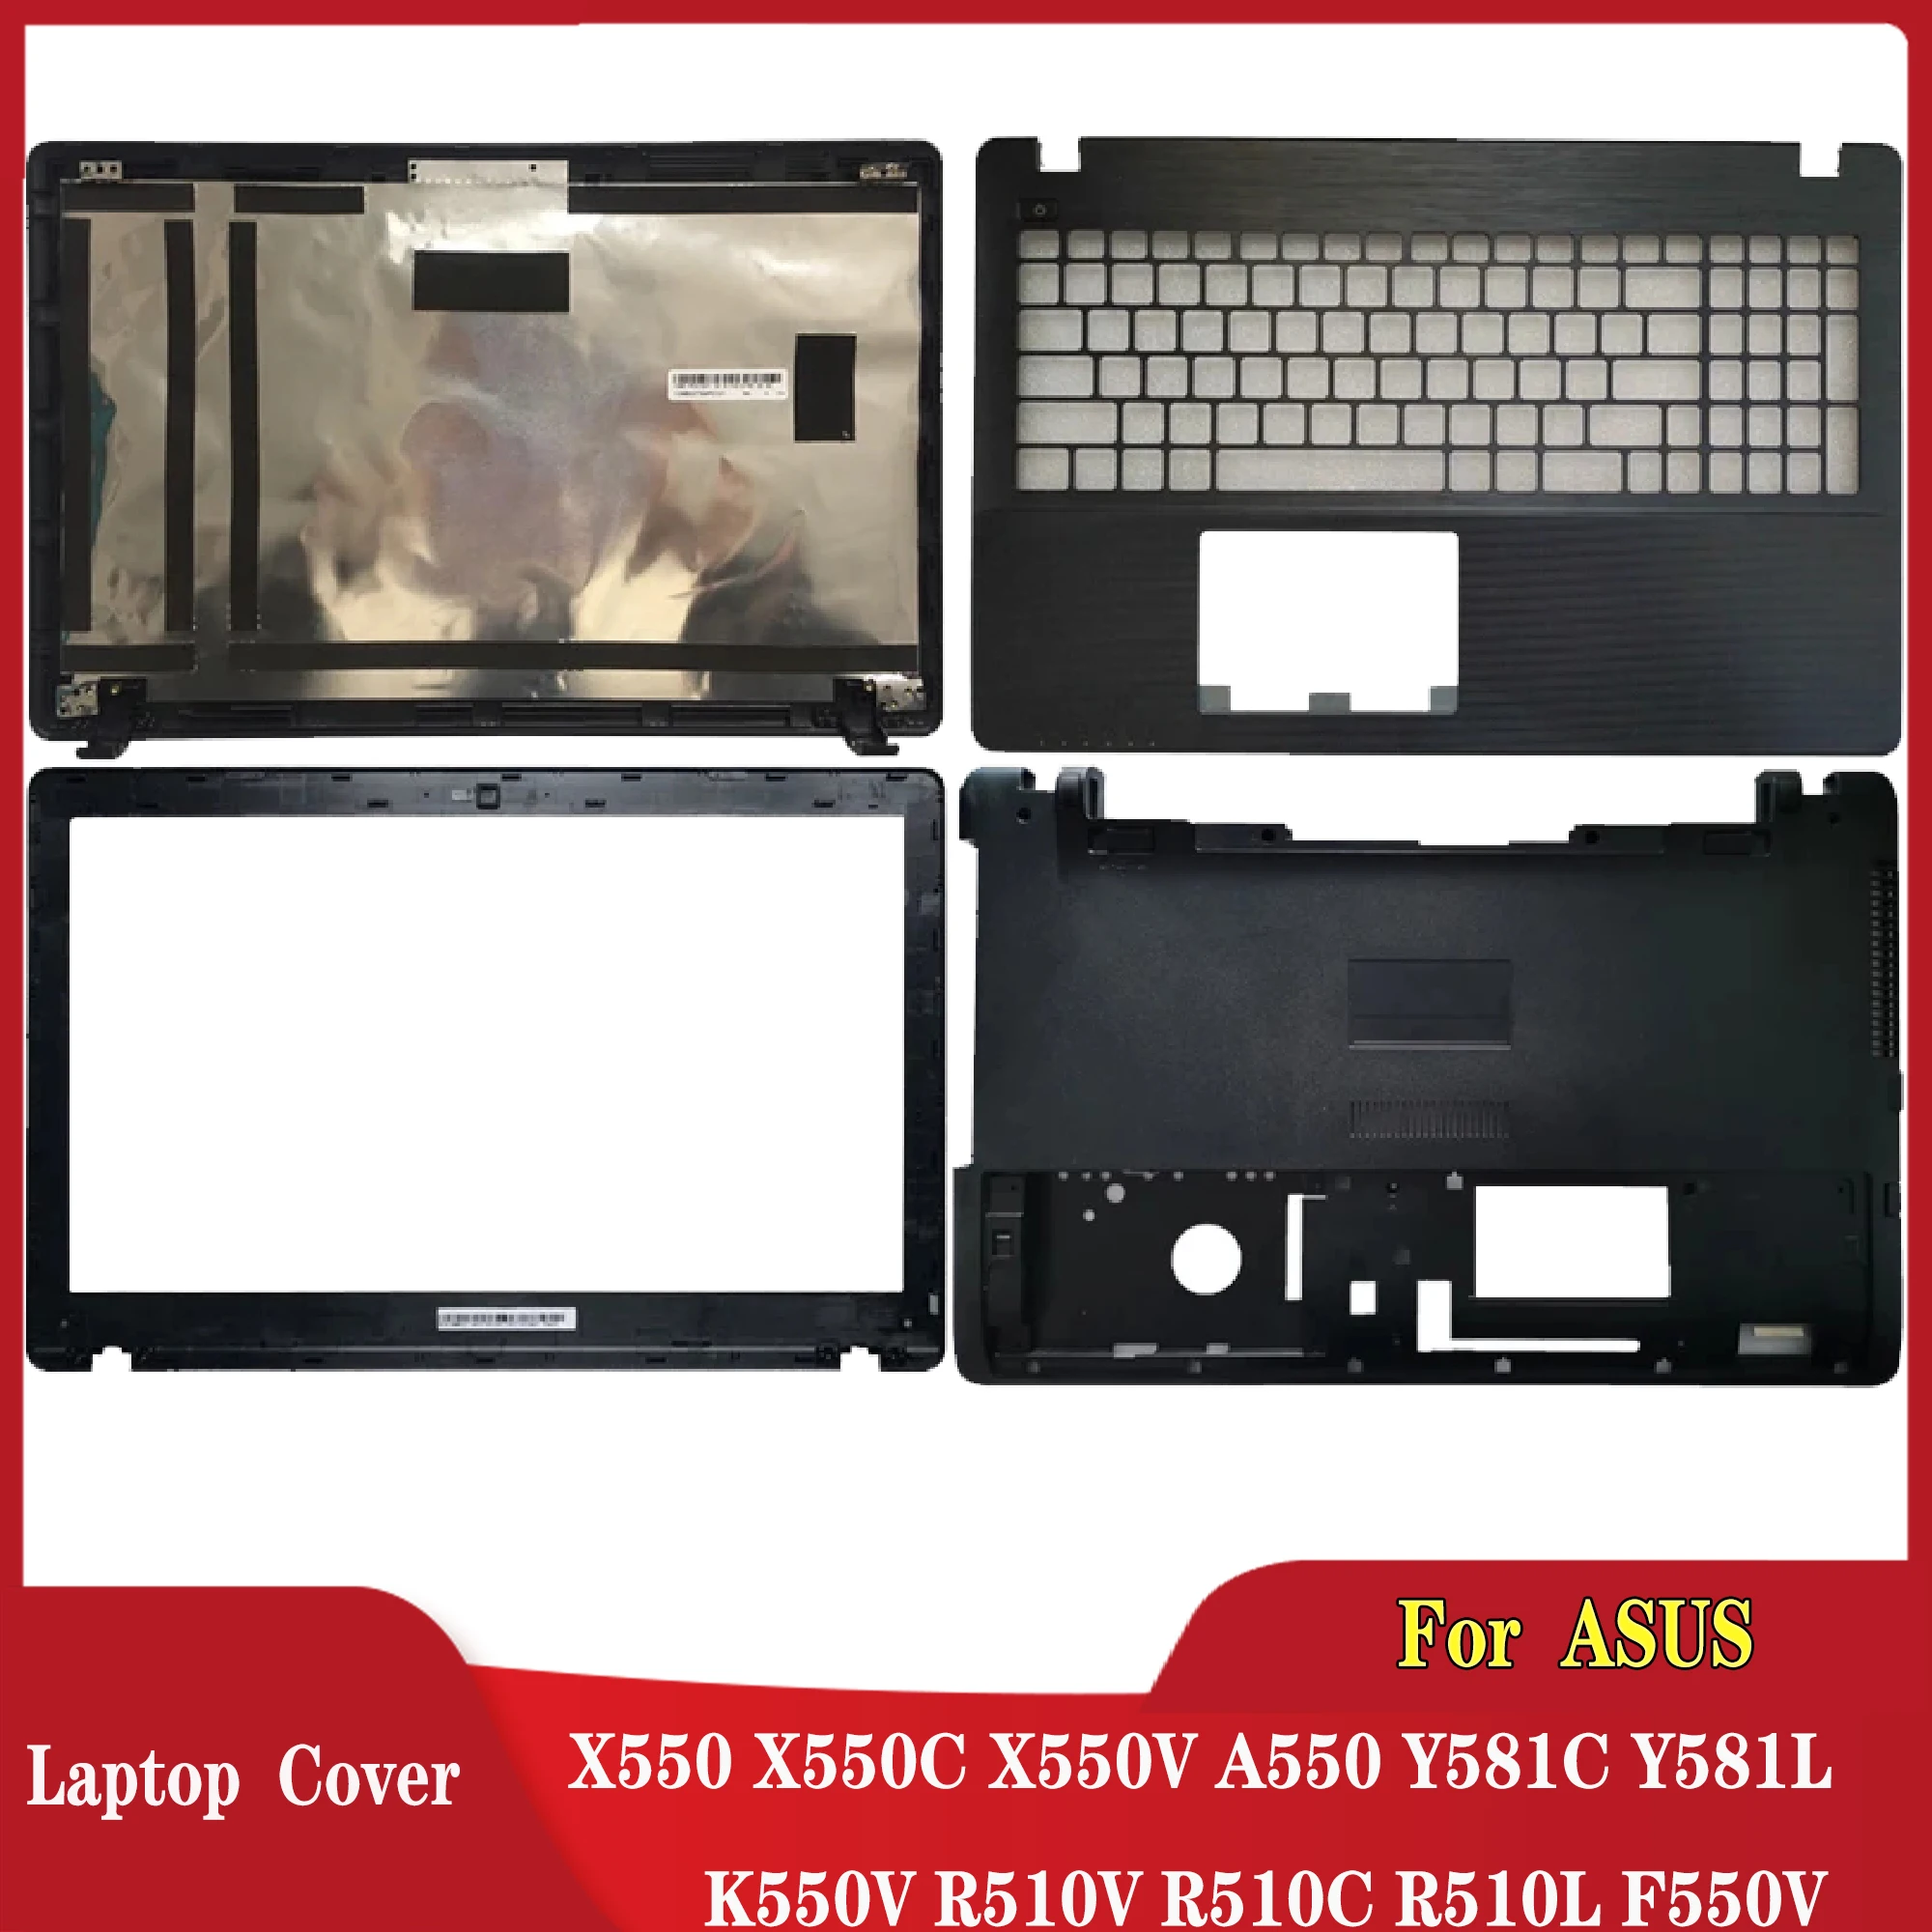 

For ASUS X550 X550C X550V A550 Y581C Y581L K550V R510V R510C R510L F550V LCD Back Cover/Front Bezel/Palmrest Upper/BOTTOM CASE